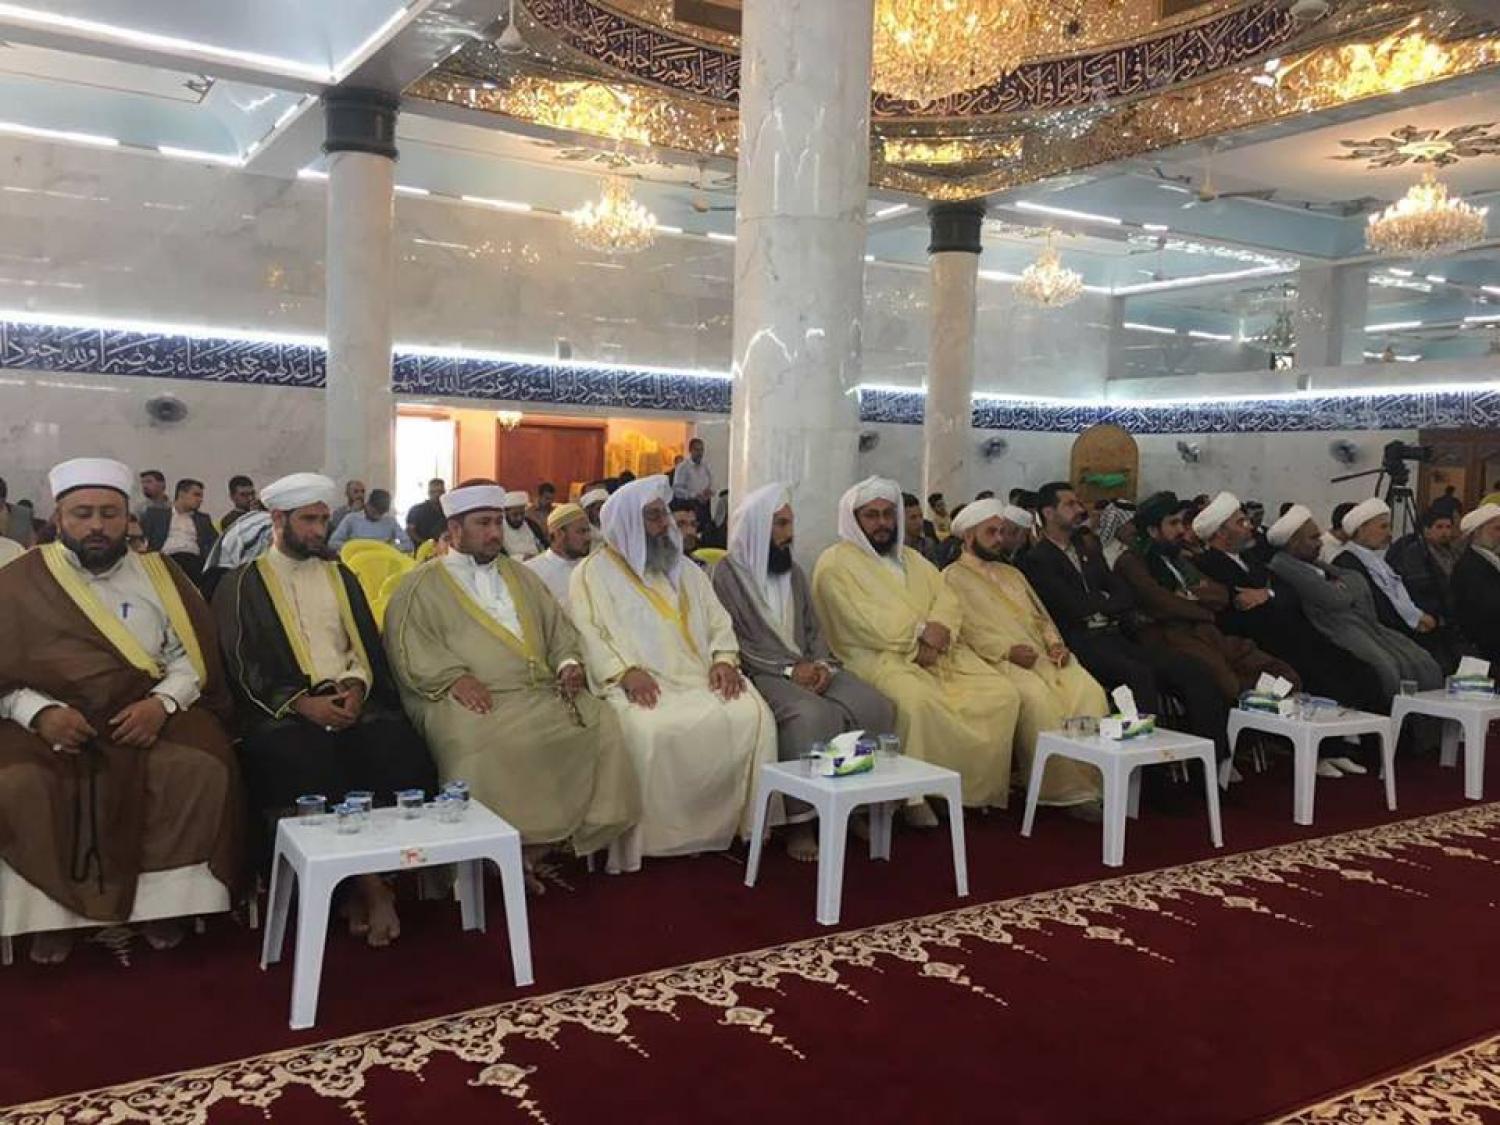 المسابقة القرآنية الوطنية الحادية عشر للحفظ والتلاوة في كربلاء